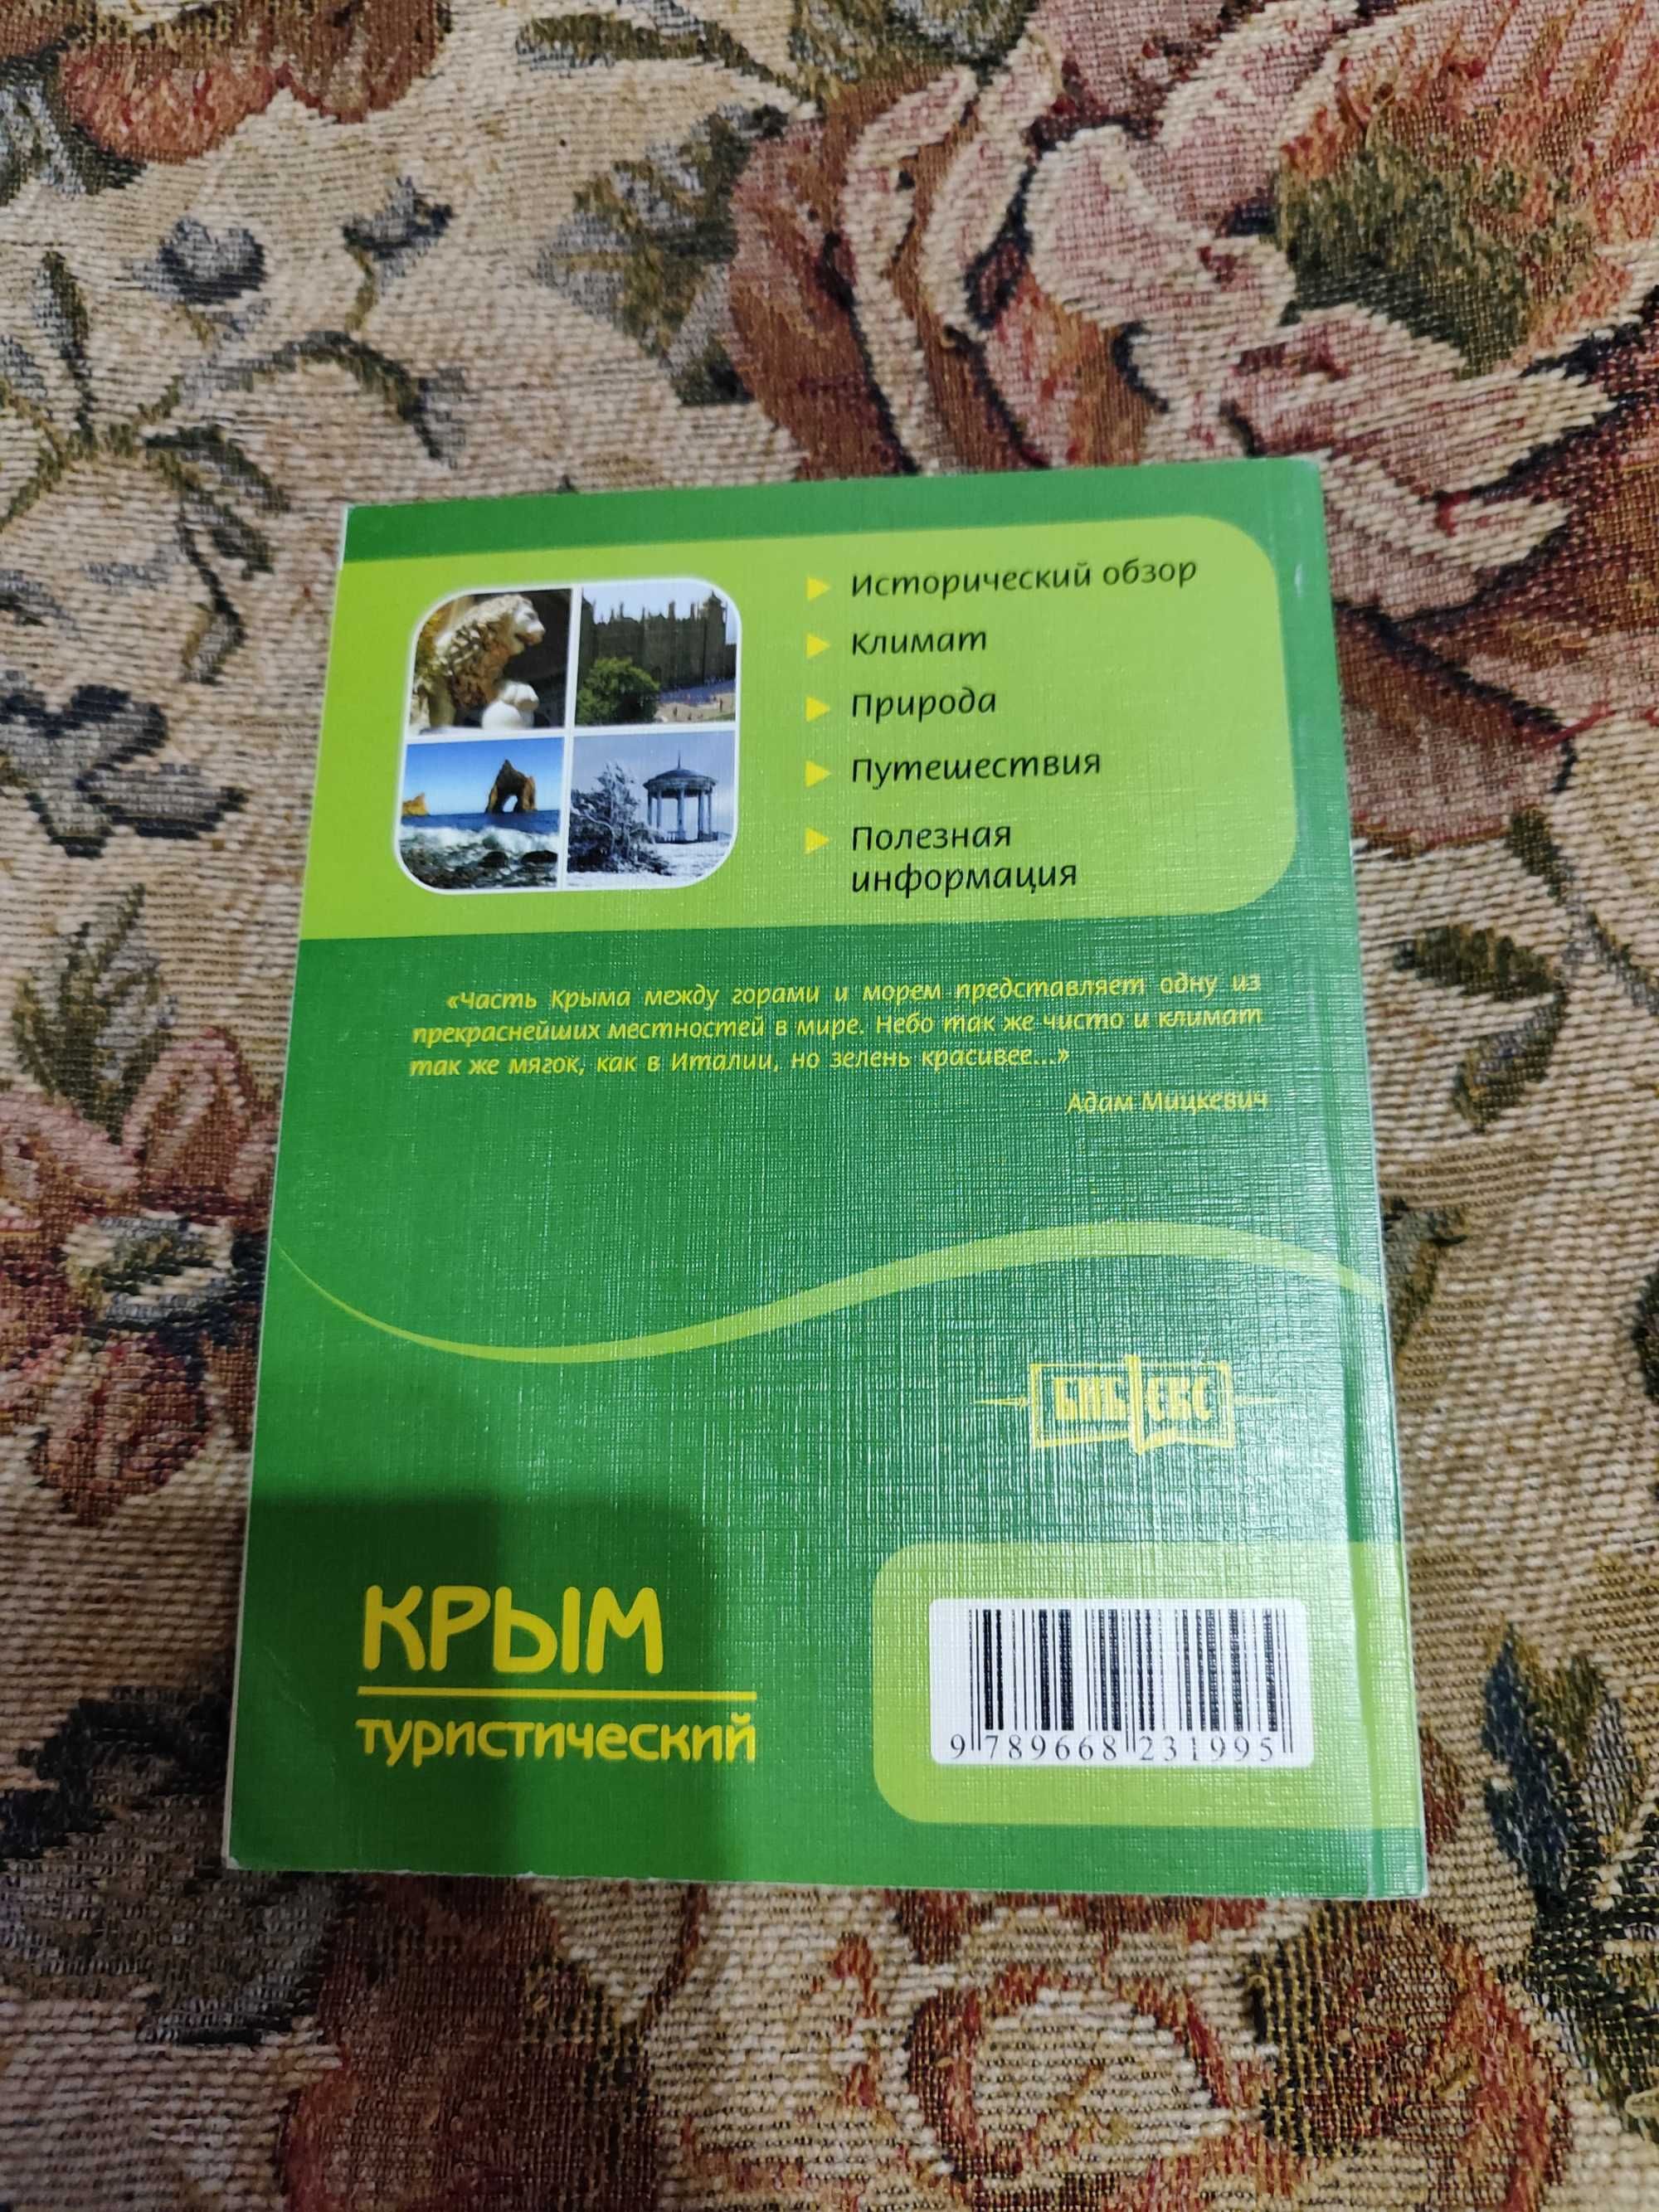 Книга "Крым туристический"